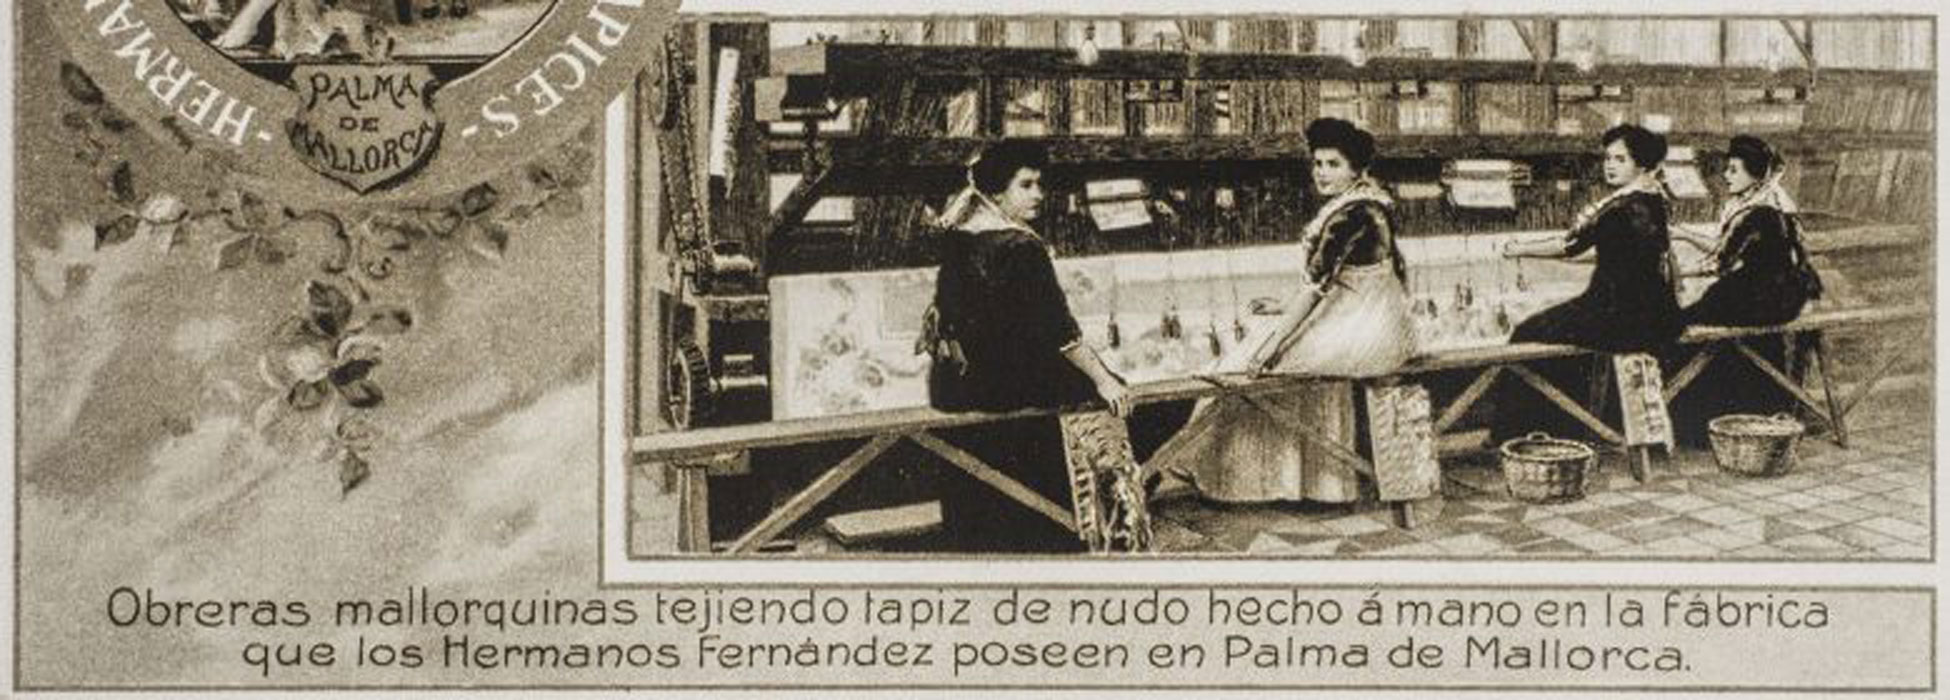 La mujer y el trabajo en la ciudad de los años 20